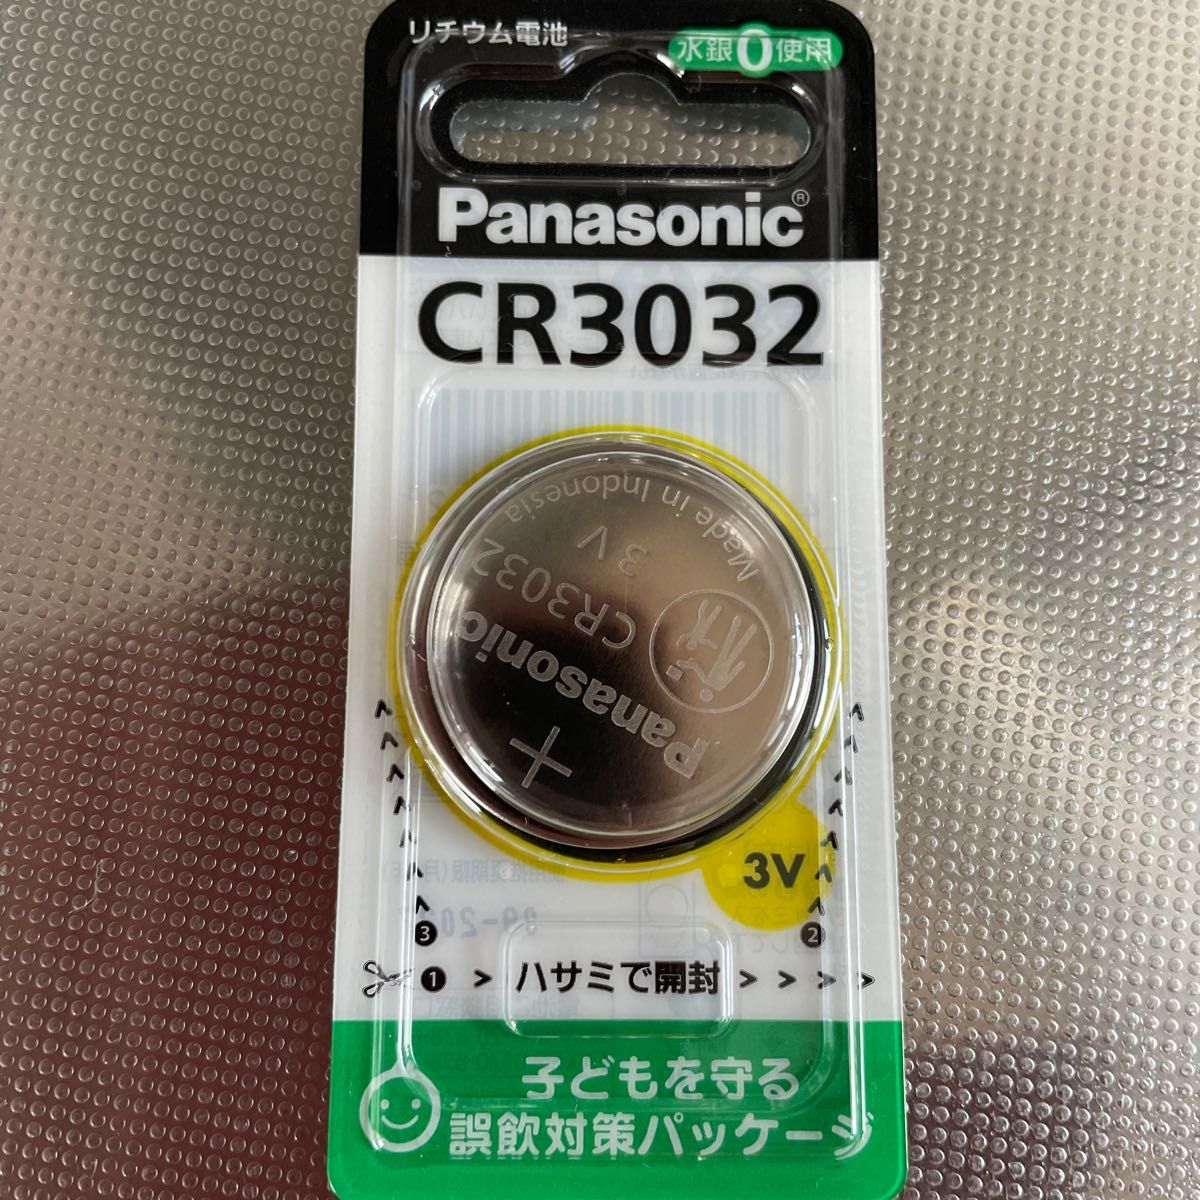 引出物 Panasonic CR3032 パナソニック リチウム コイン電池 3V コイン型 純正品 ボタン電池